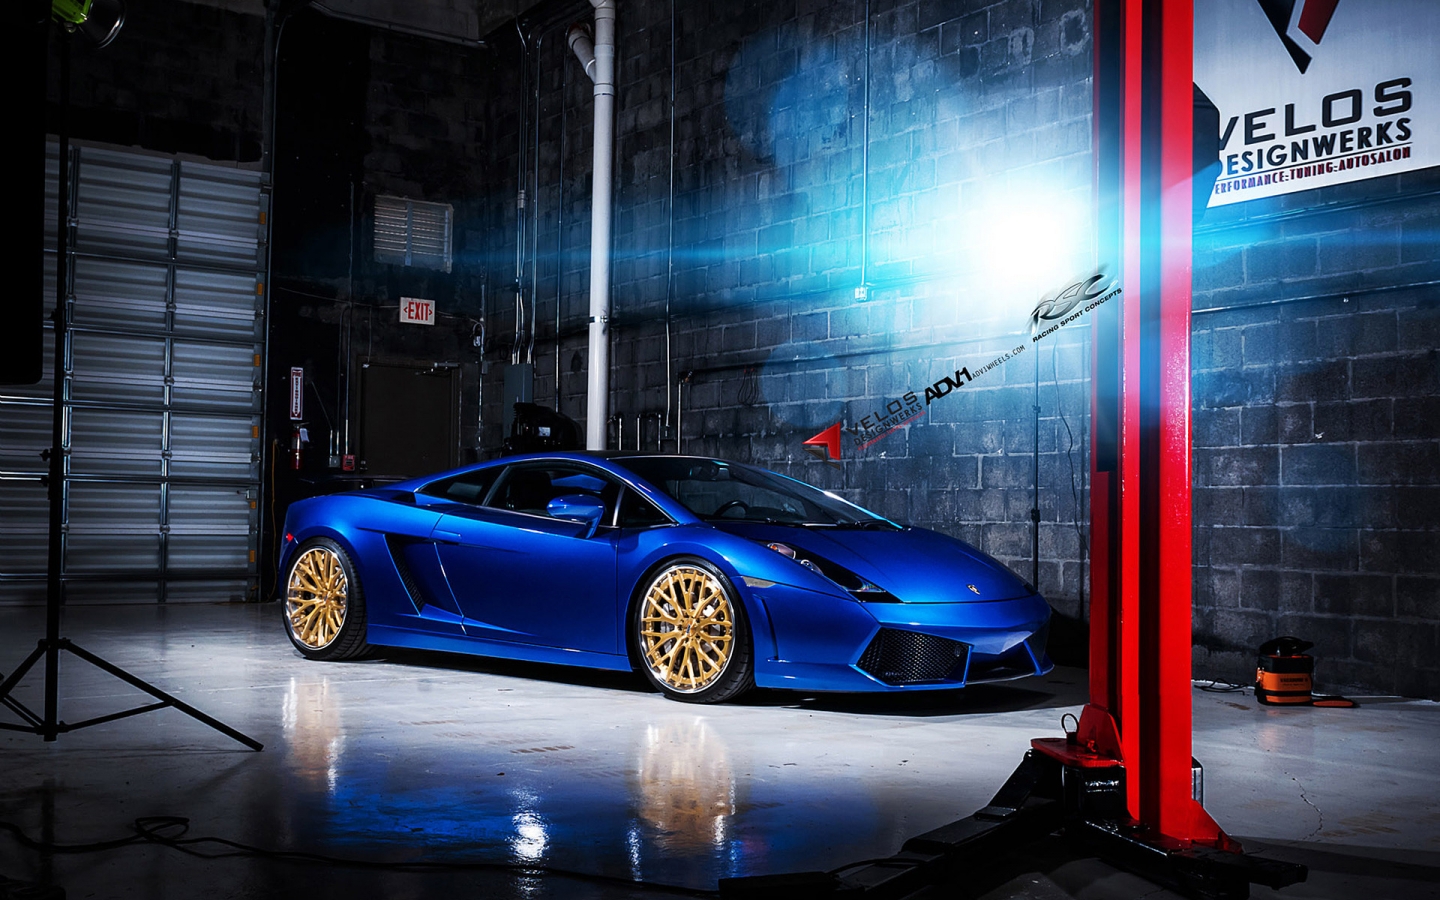 Blue Lamborghini Gallardo ADV10 for 1440 x 900 widescreen resolution